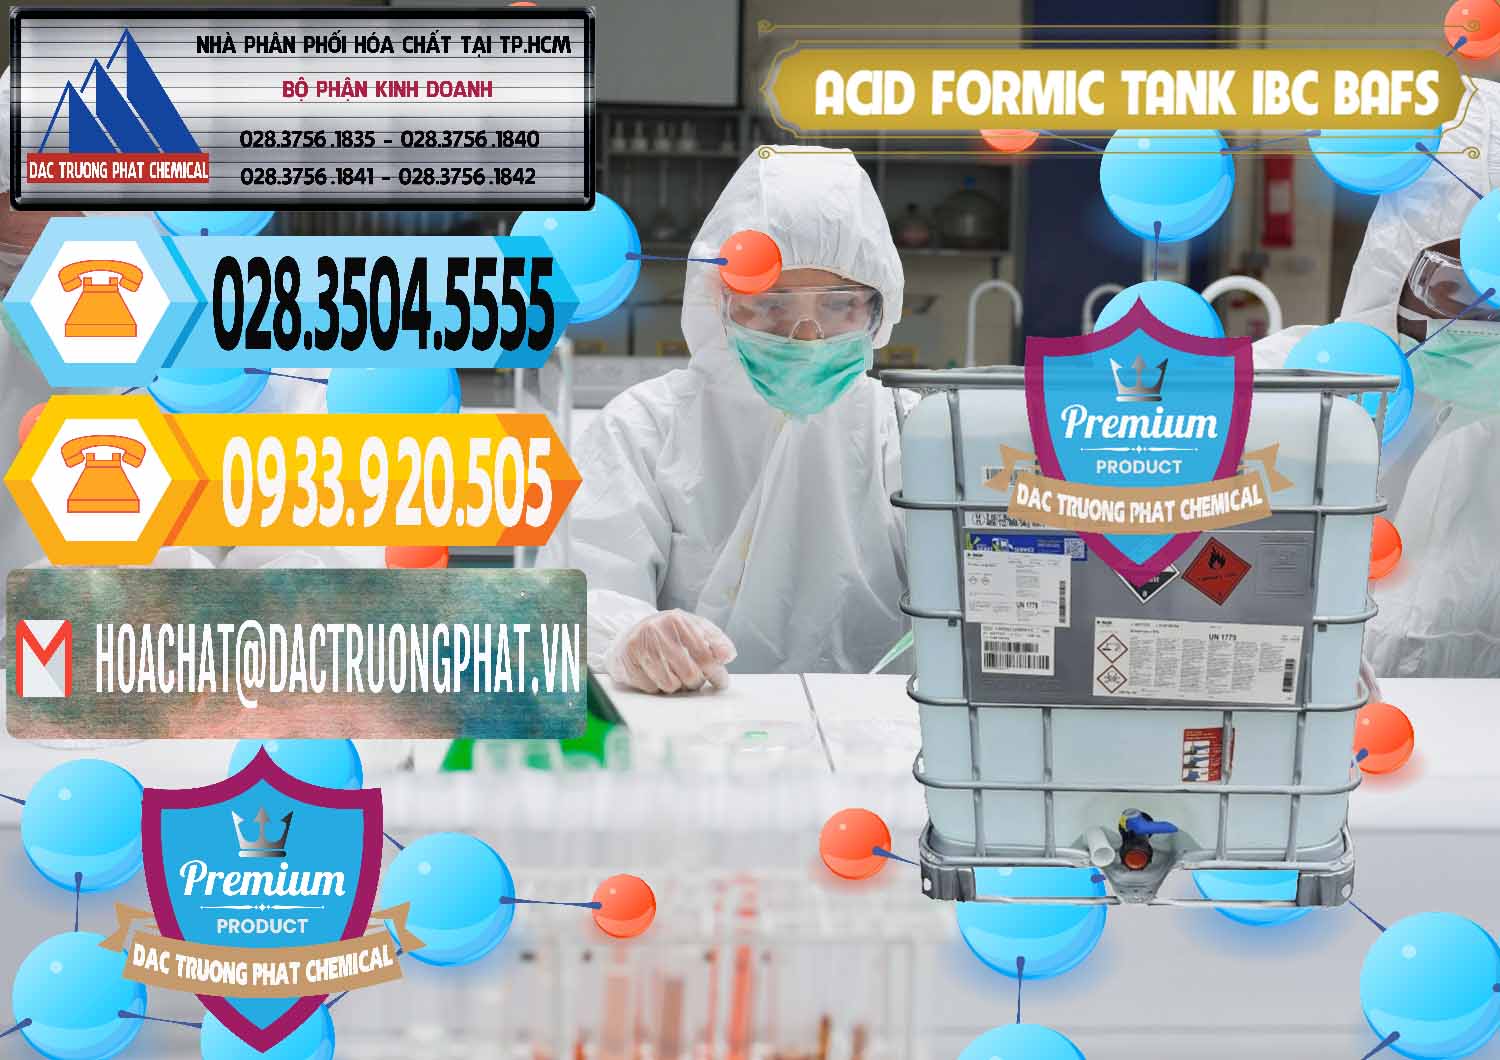 Nơi chuyên cung cấp và bán Acid Formic - Axit Formic Tank - Bồn IBC BASF Đức - 0366 - Cty kinh doanh và cung cấp hóa chất tại TP.HCM - hoachattayrua.net